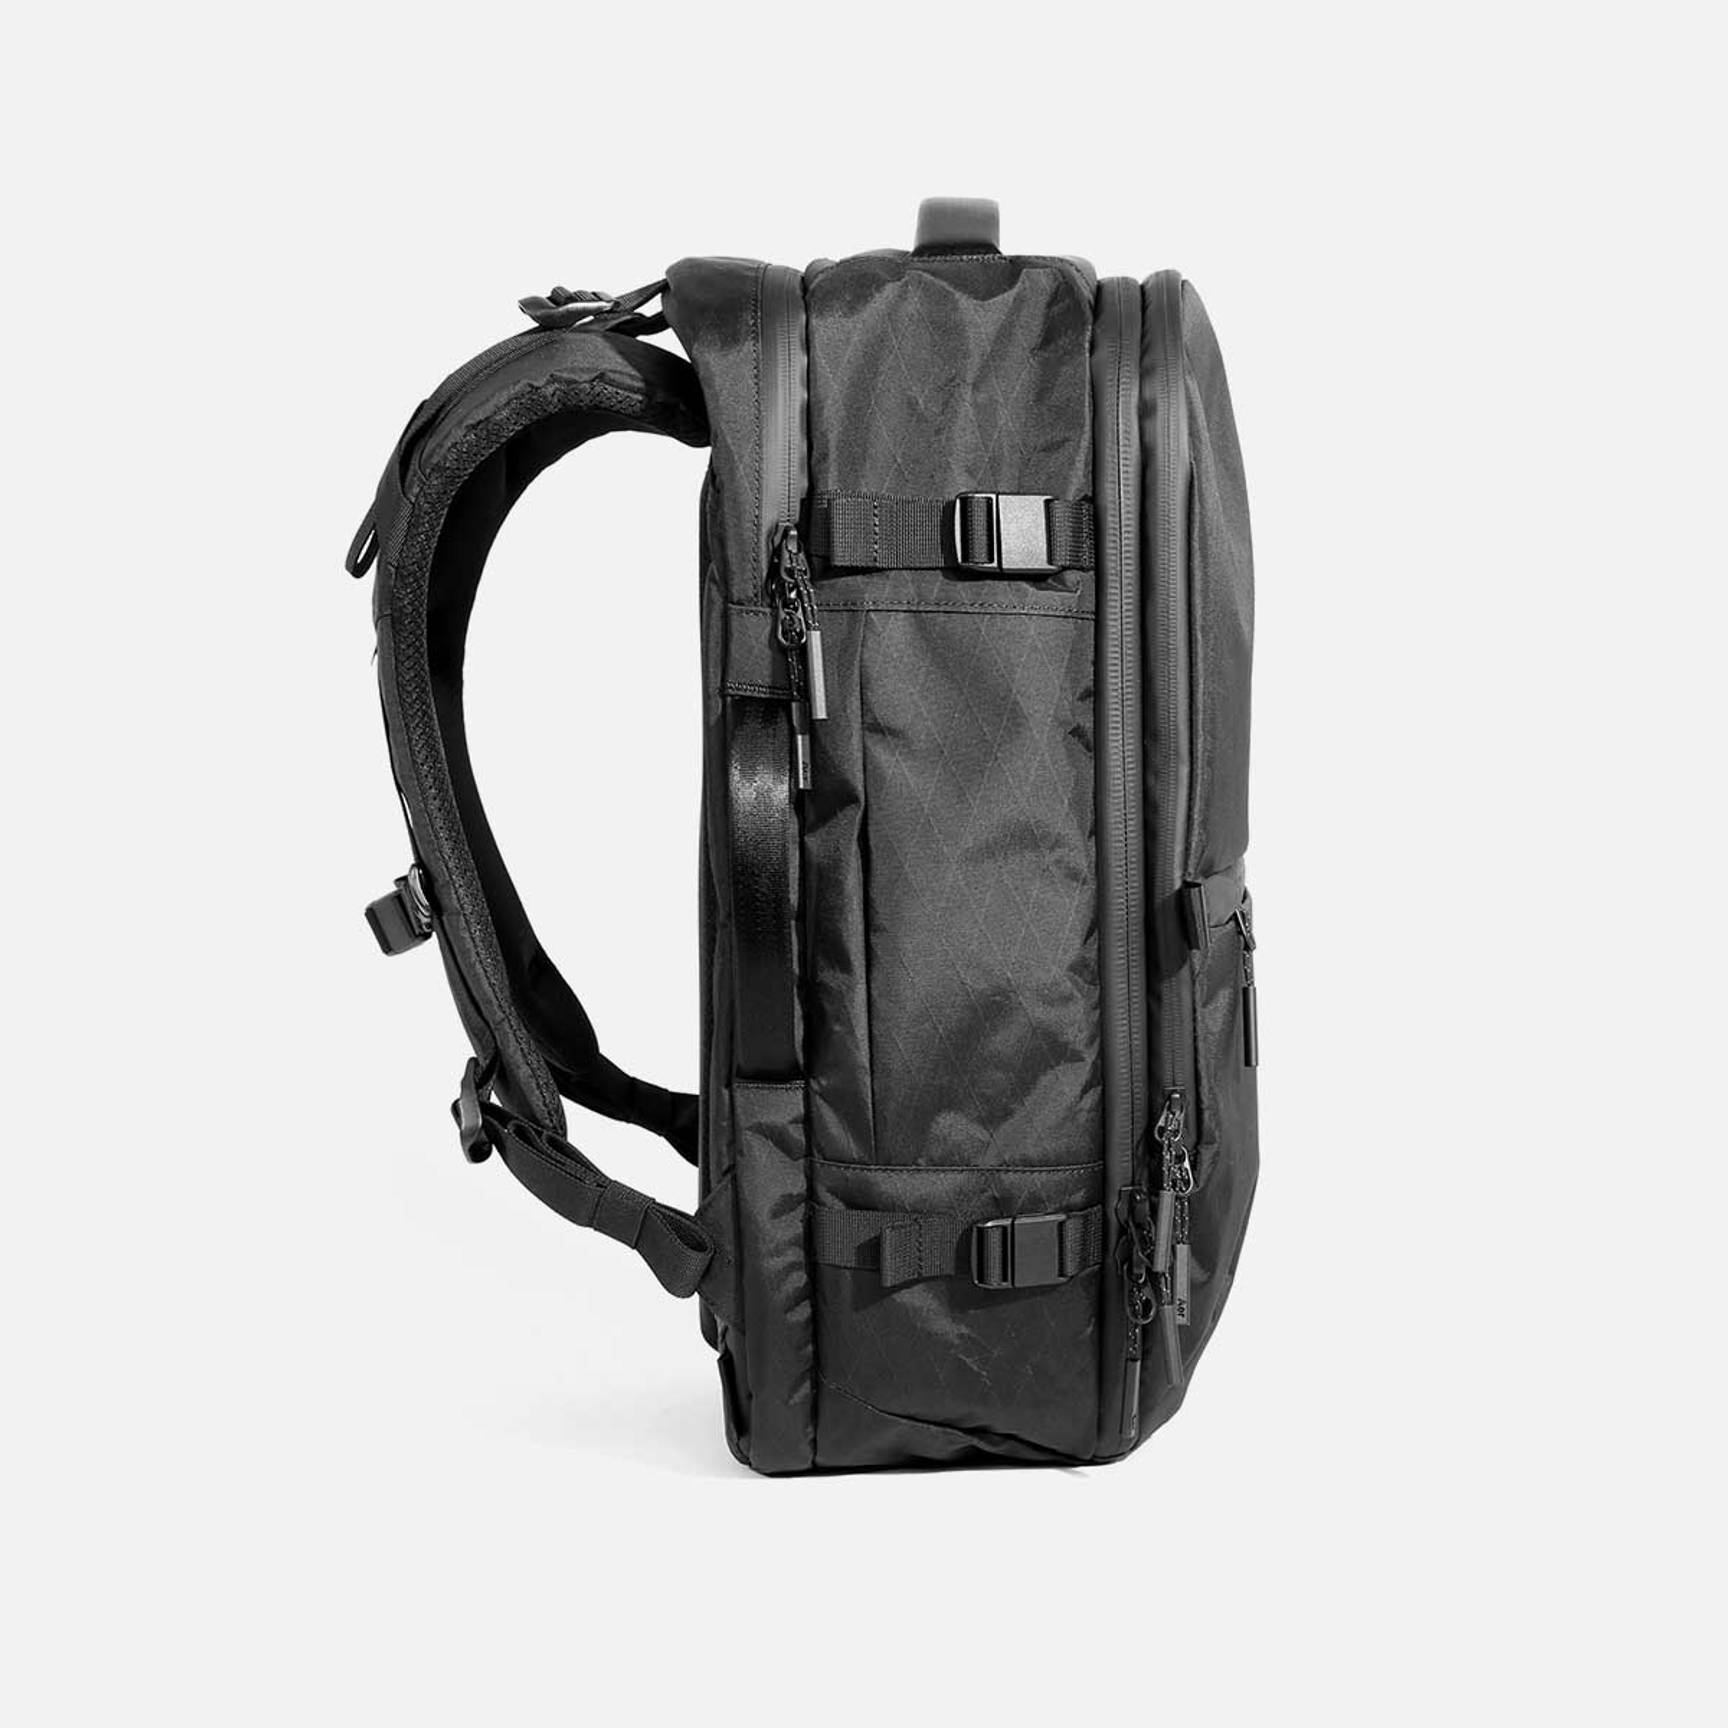 Aer Travel Pack 3 Backpack in Black